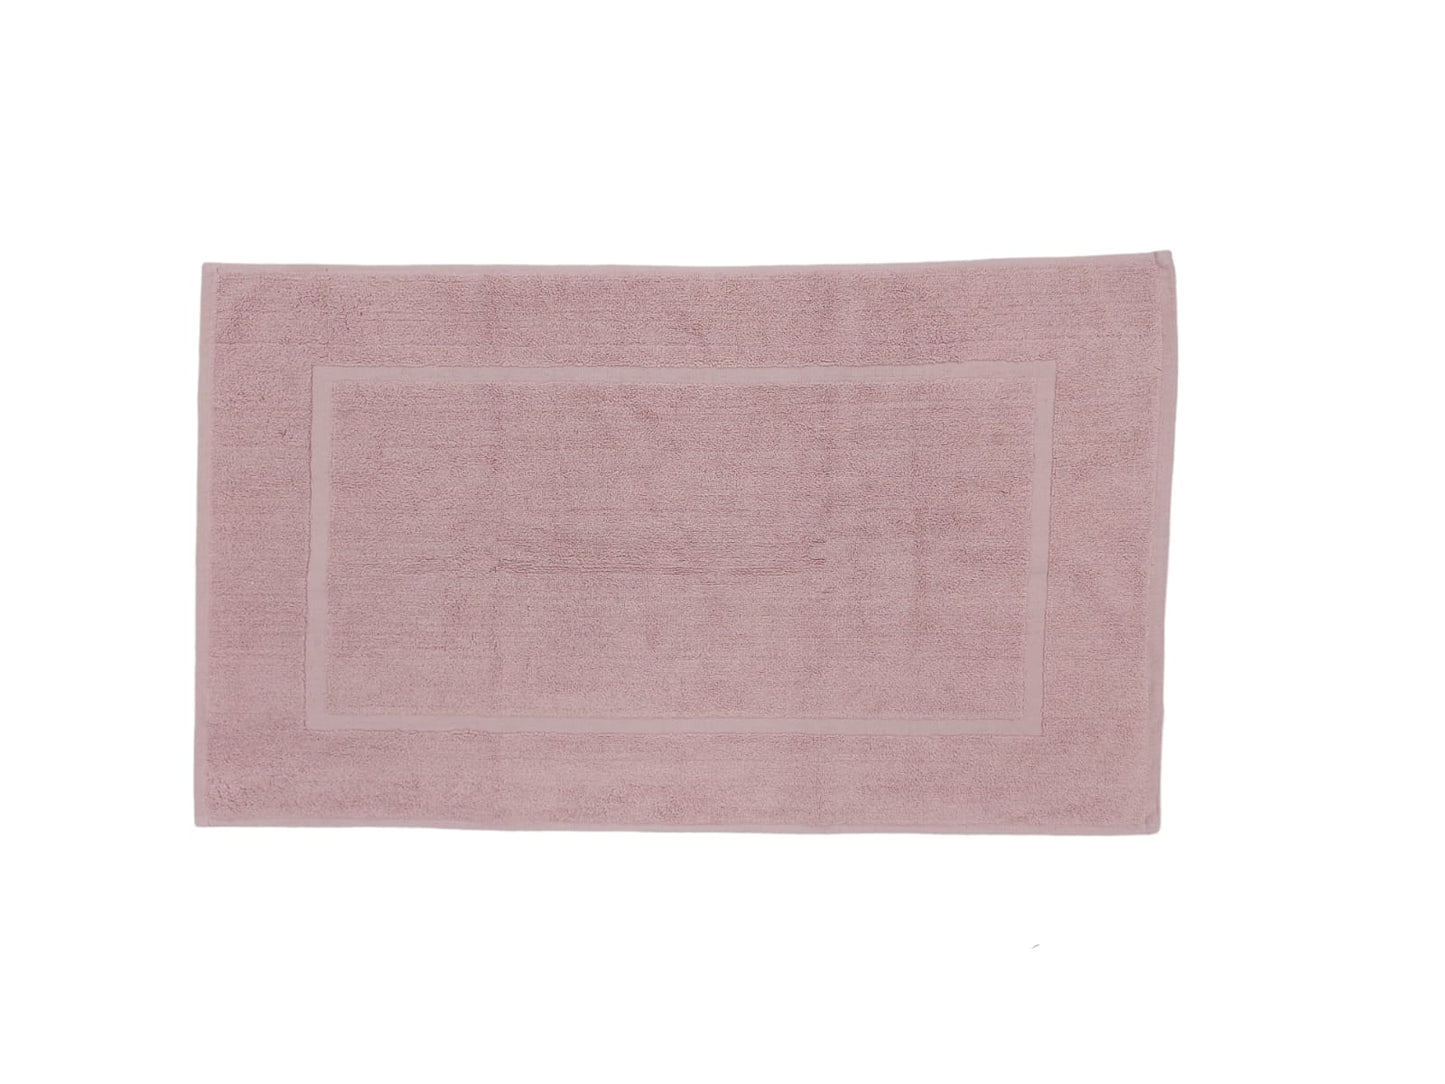 BIANCA cotton bathmat powder pink